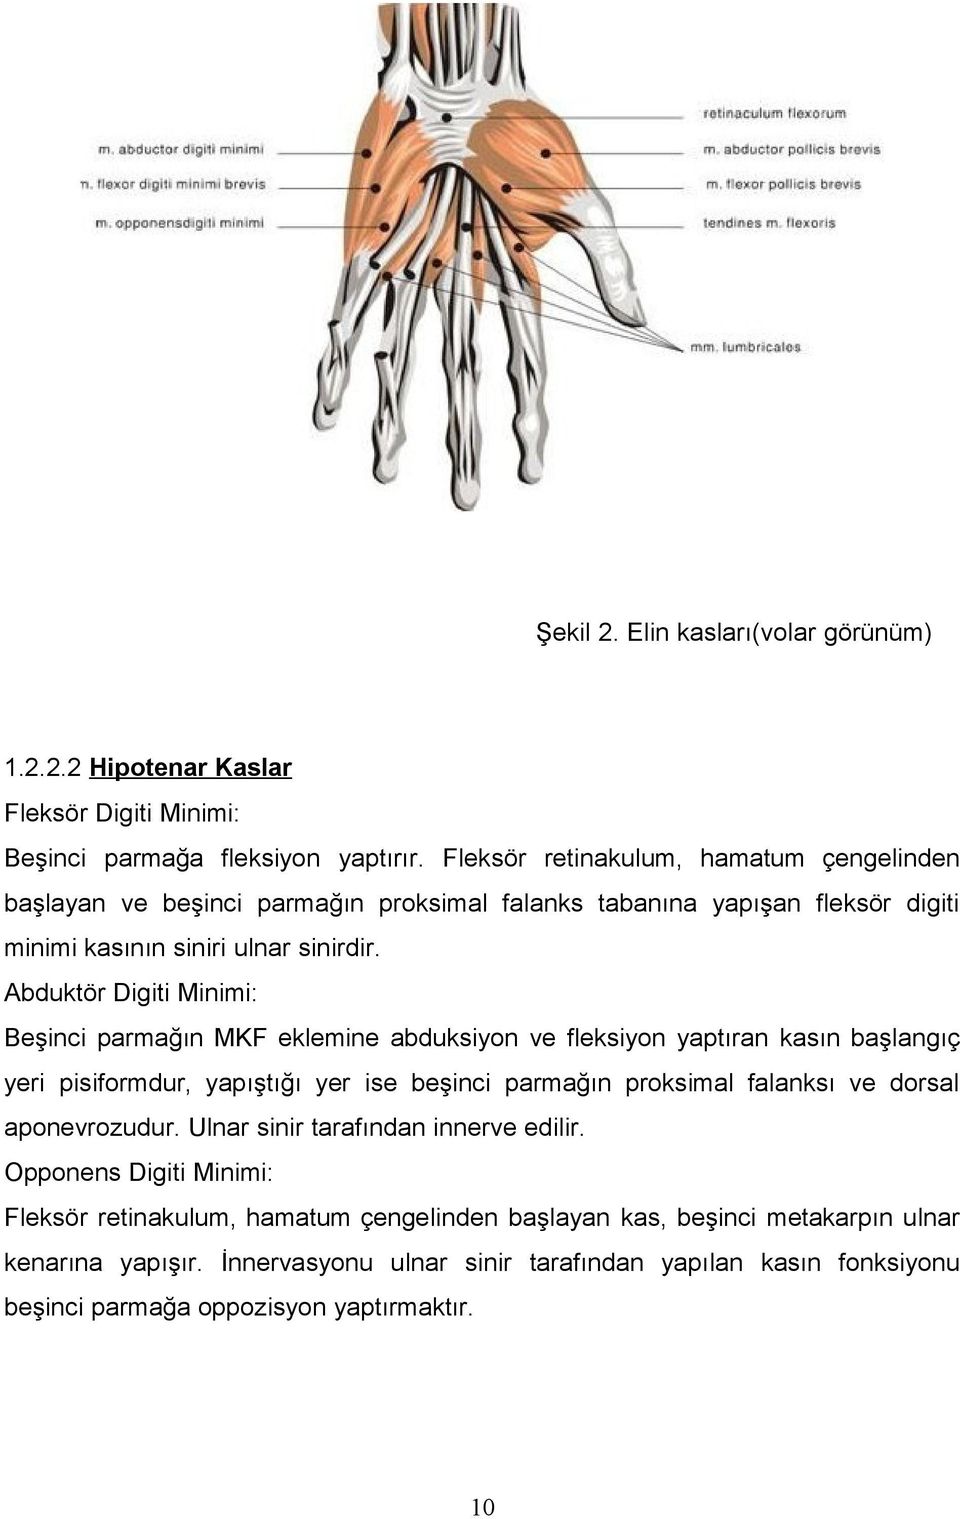 Abduktör Digiti Minimi: Beşinci parmağın MKF eklemine abduksiyon ve fleksiyon yaptıran kasın başlangıç yeri pisiformdur, yapıştığı yer ise beşinci parmağın proksimal falanksı ve dorsal